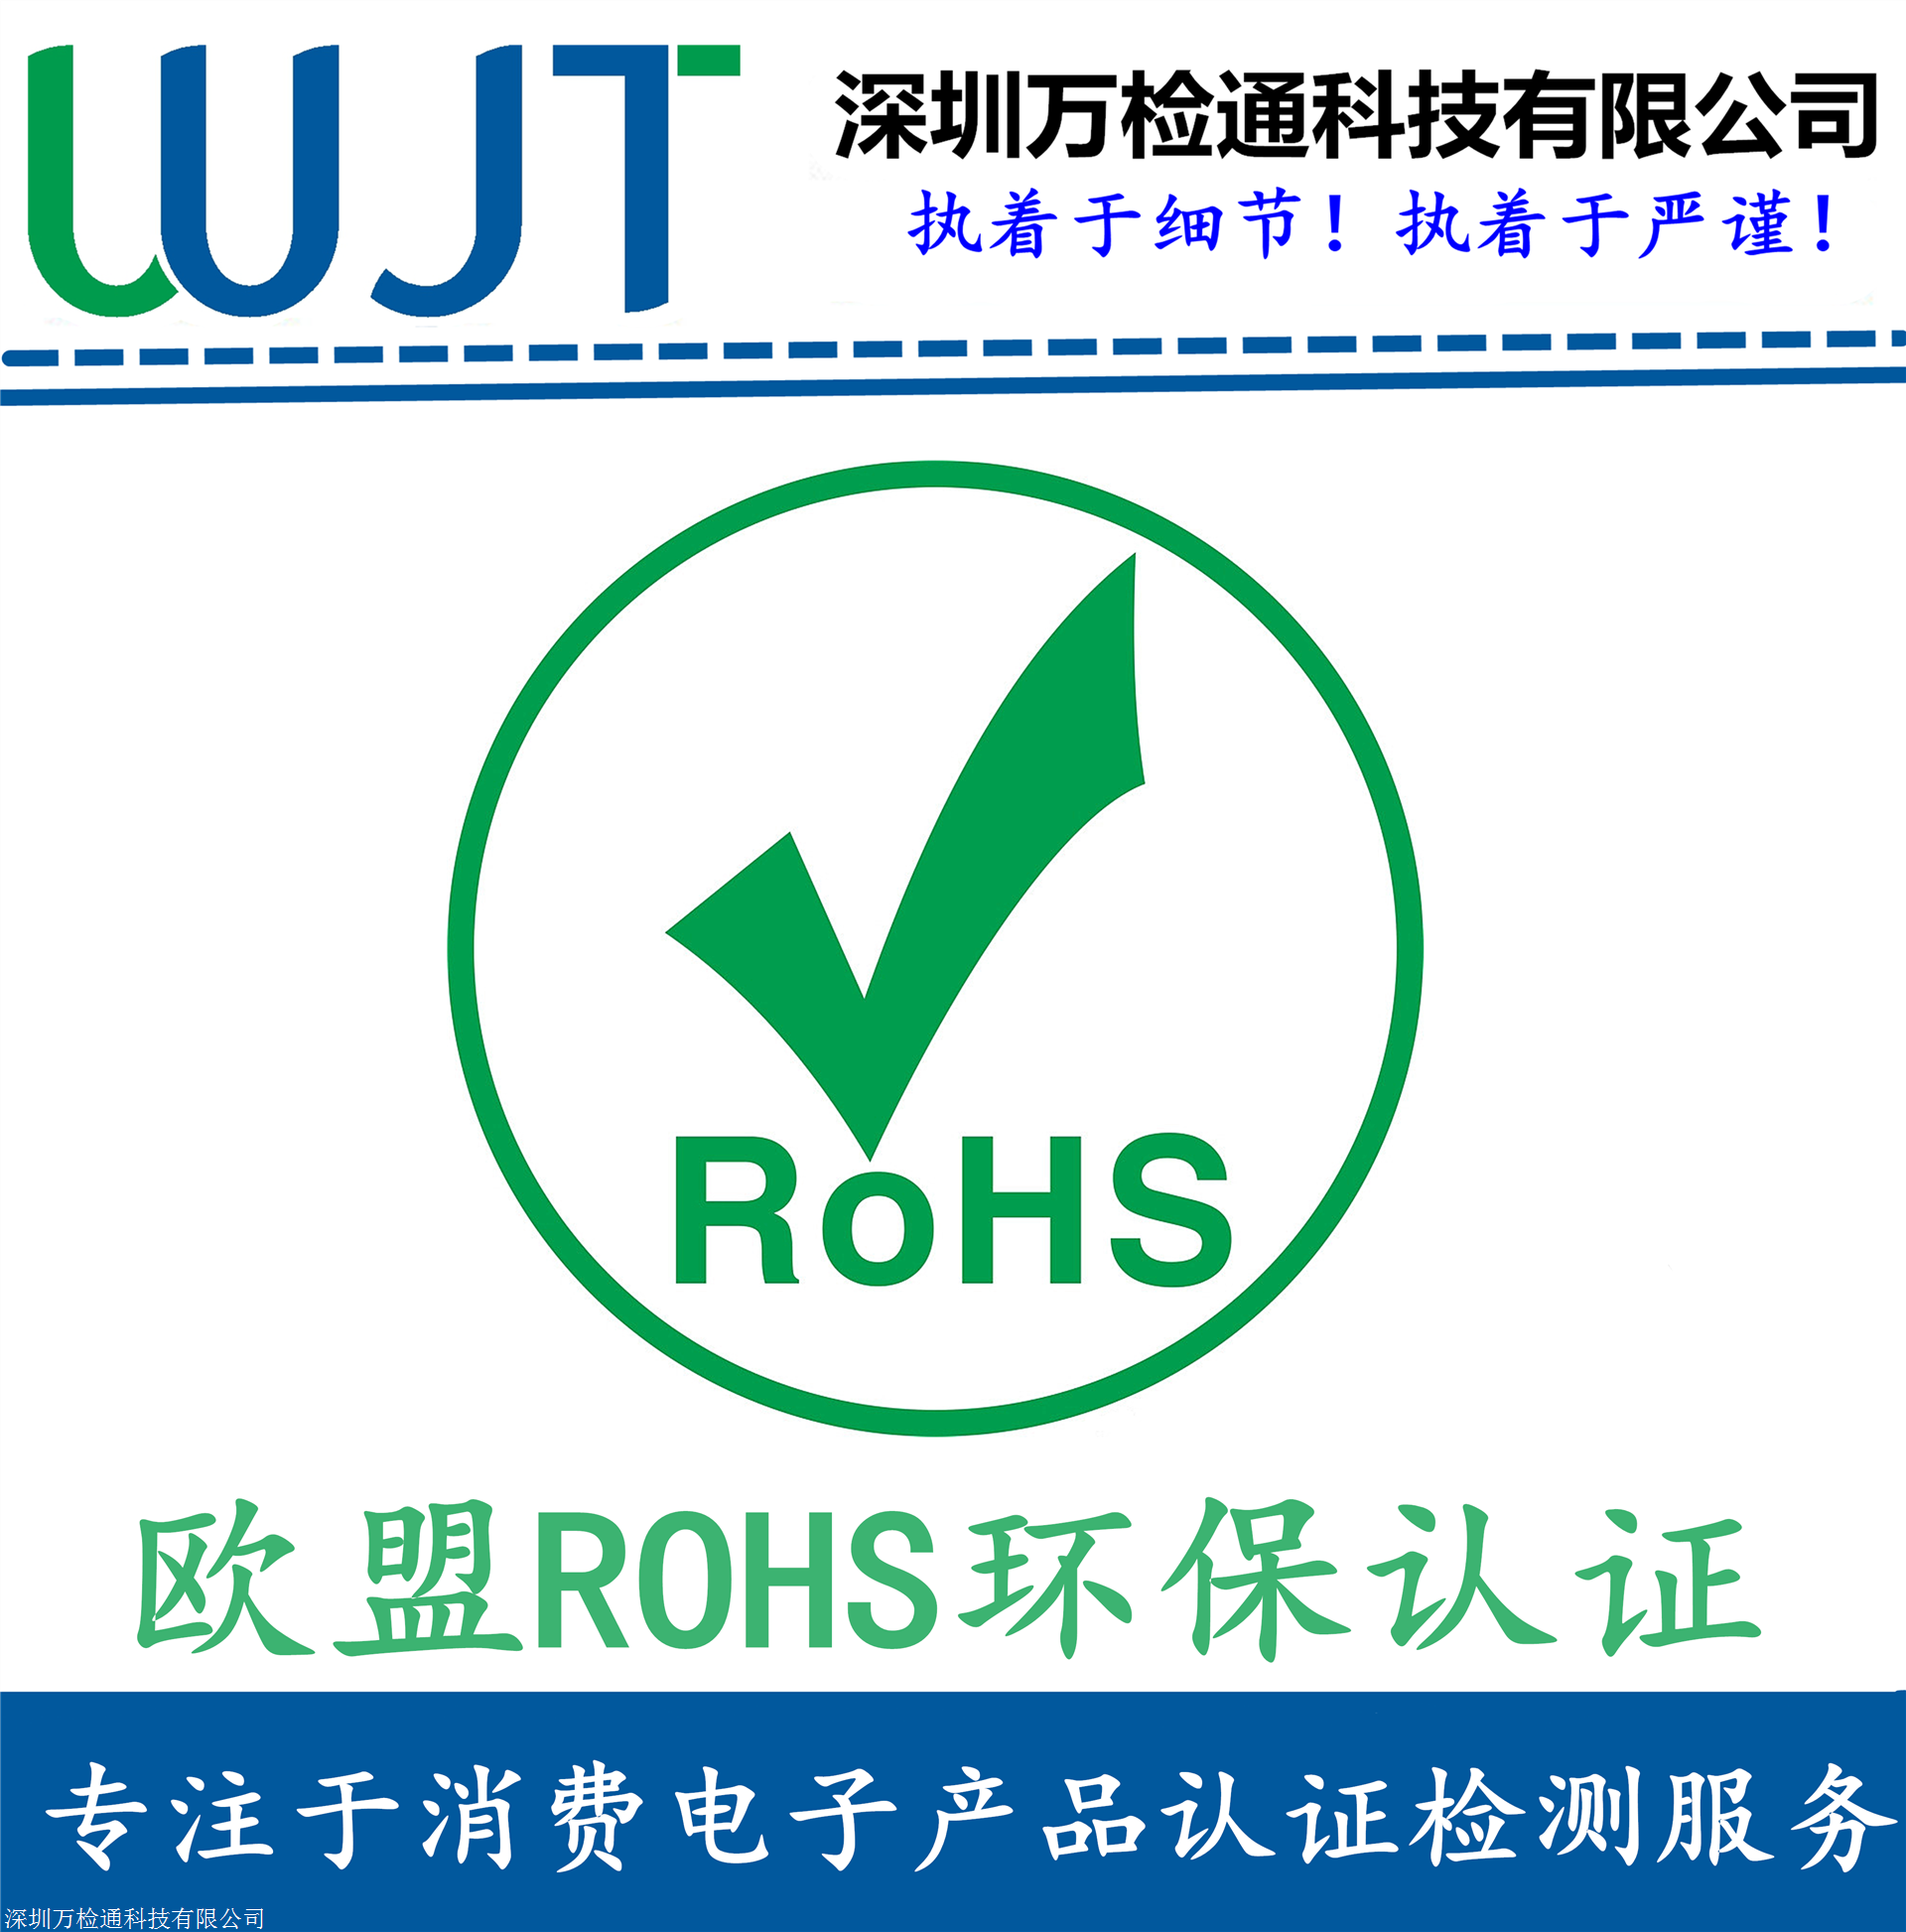 过真实性核验商品数量1000000所属系列rohs关键词rohs认证,环保rohs